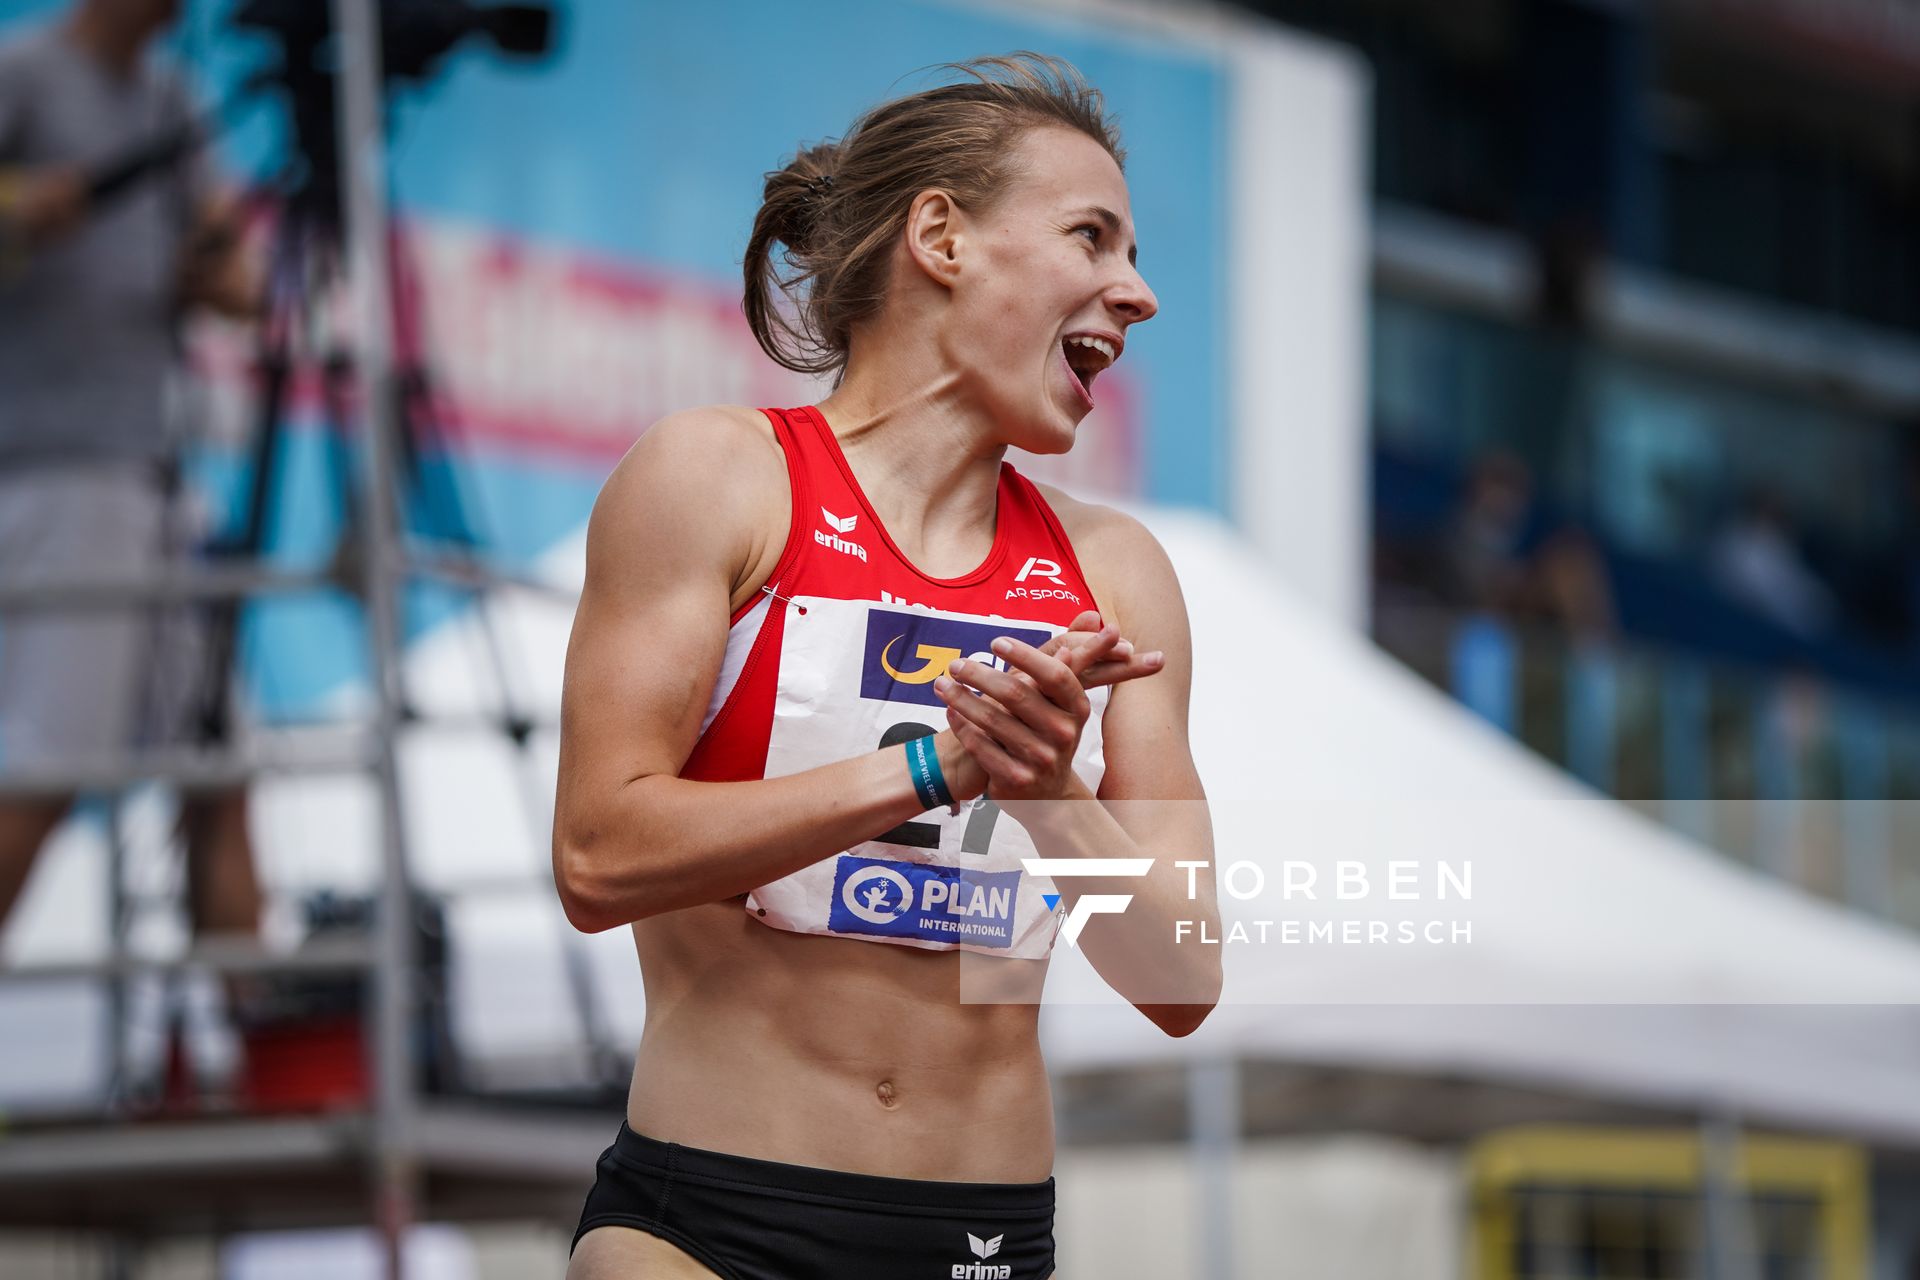 Melanie Boehm (LG Neckar-Enz) im 400m Huerden Finale am 27.06.2021 waehrend den deutschen U23 Leichtathletik-Meisterschaften 2021 im Stadion Oberwerth in Koblenz